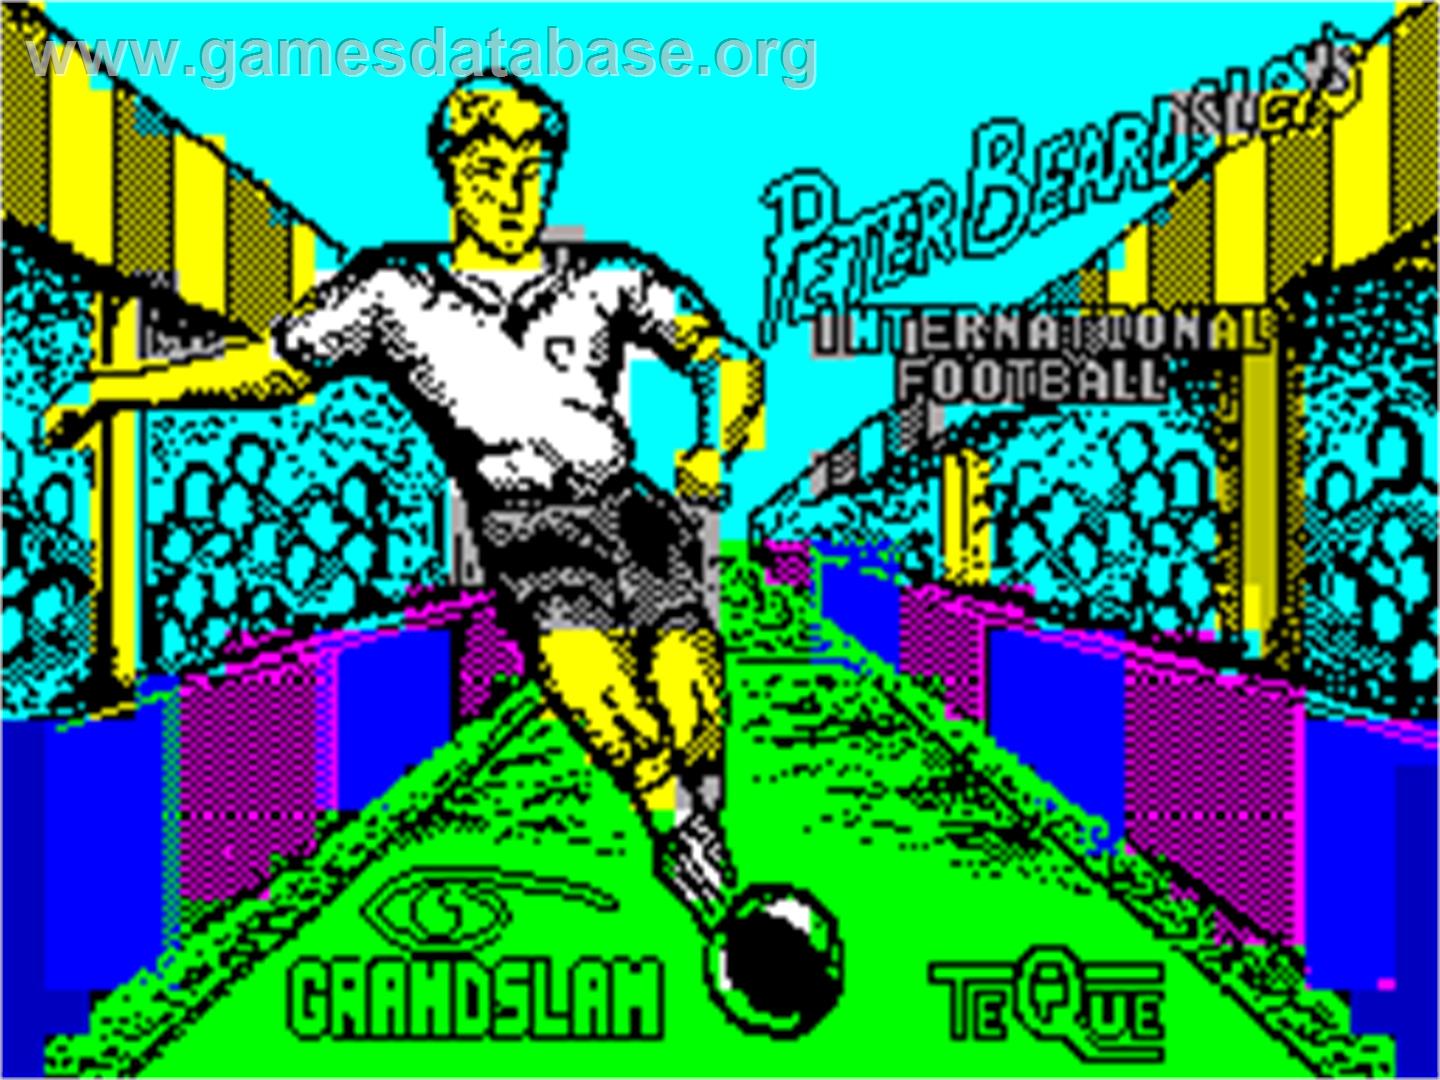 Peter Beardsley's International Football - Sinclair ZX Spectrum - Artwork - Title Screen